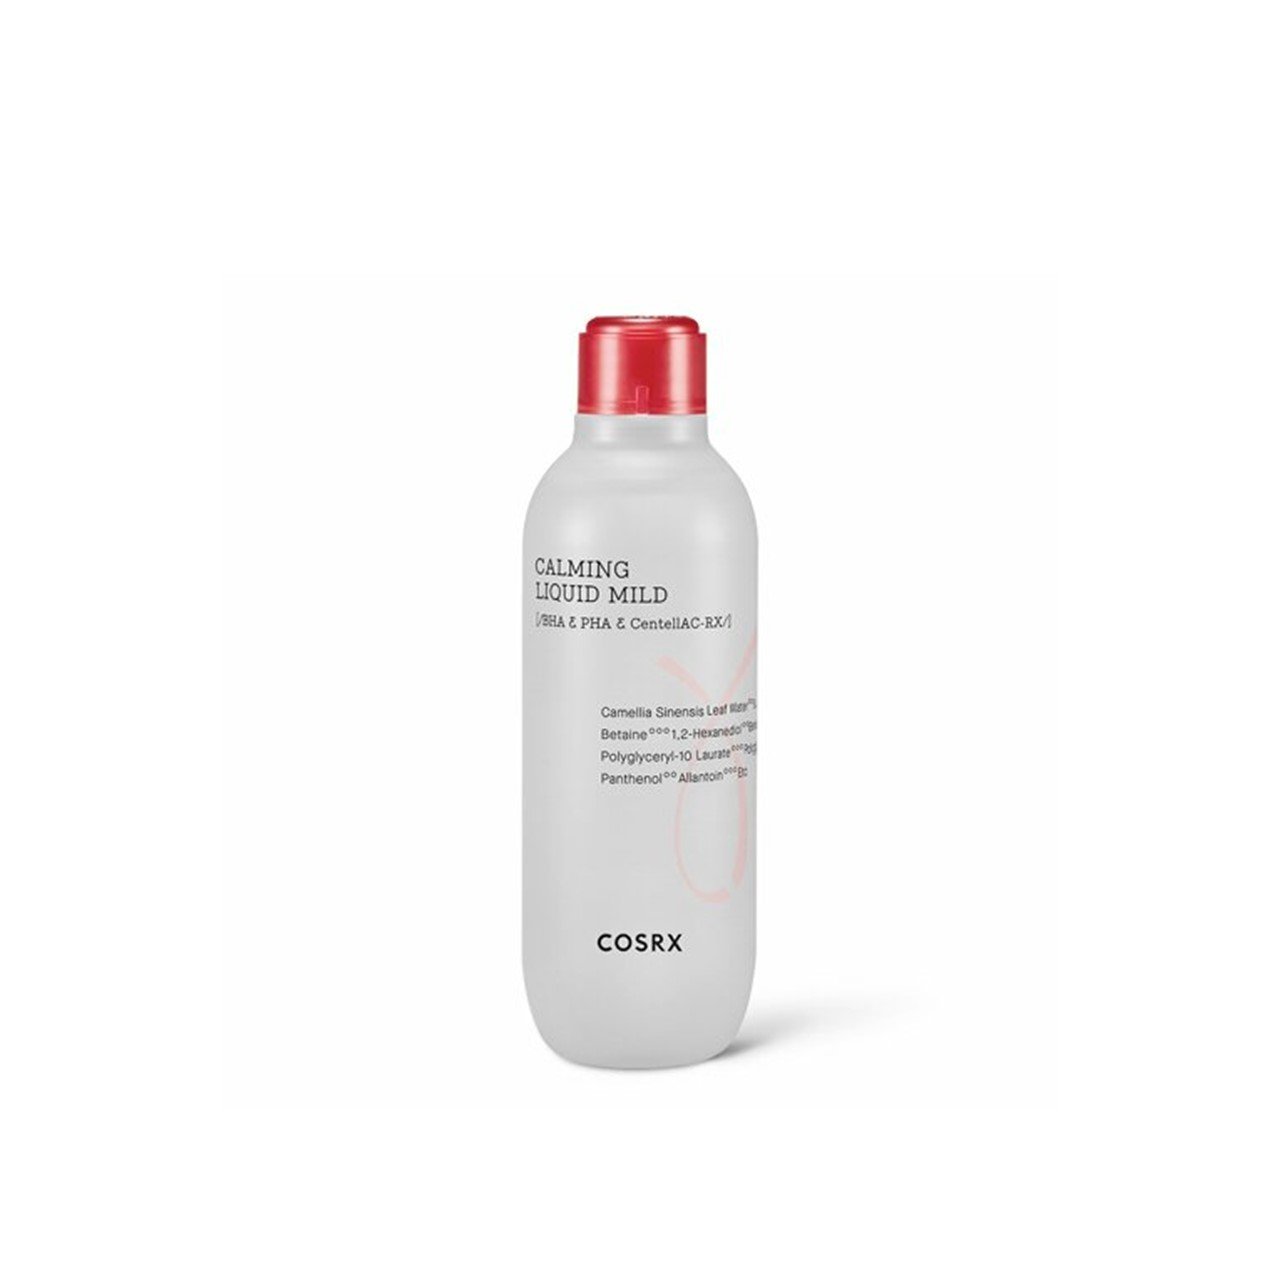 COSRX Calming Liquid Mild 125ml (4.23fl oz)